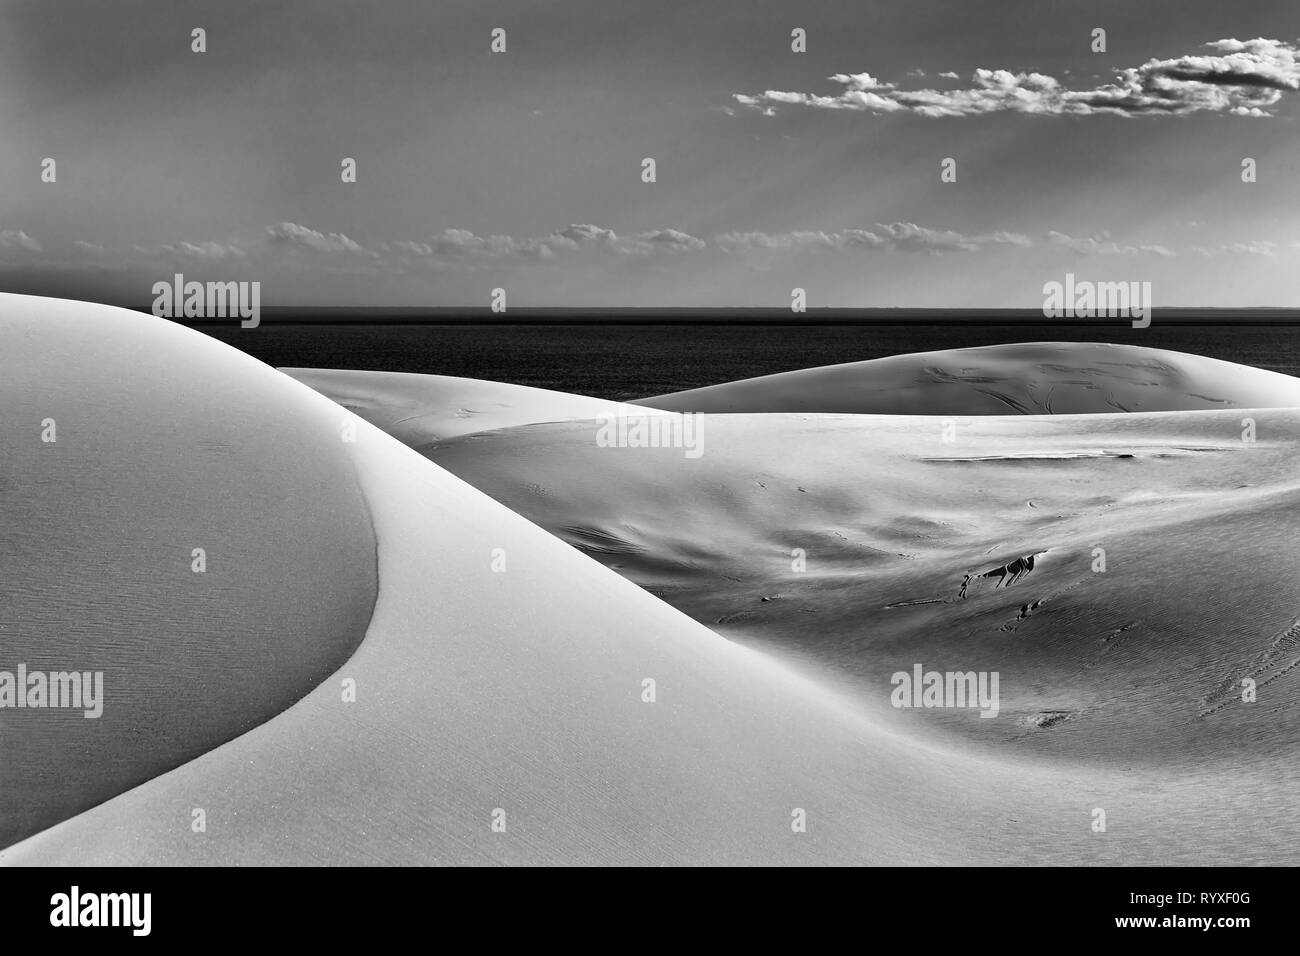 Abstrakte schwarz-weiß Bild von Formen in den Sand Dünen am Strand Stockon auf der Pacific Coast, Australien. Hoher Kontrast glatte Linien durch natürliche gebildet gewinnen Stockfoto